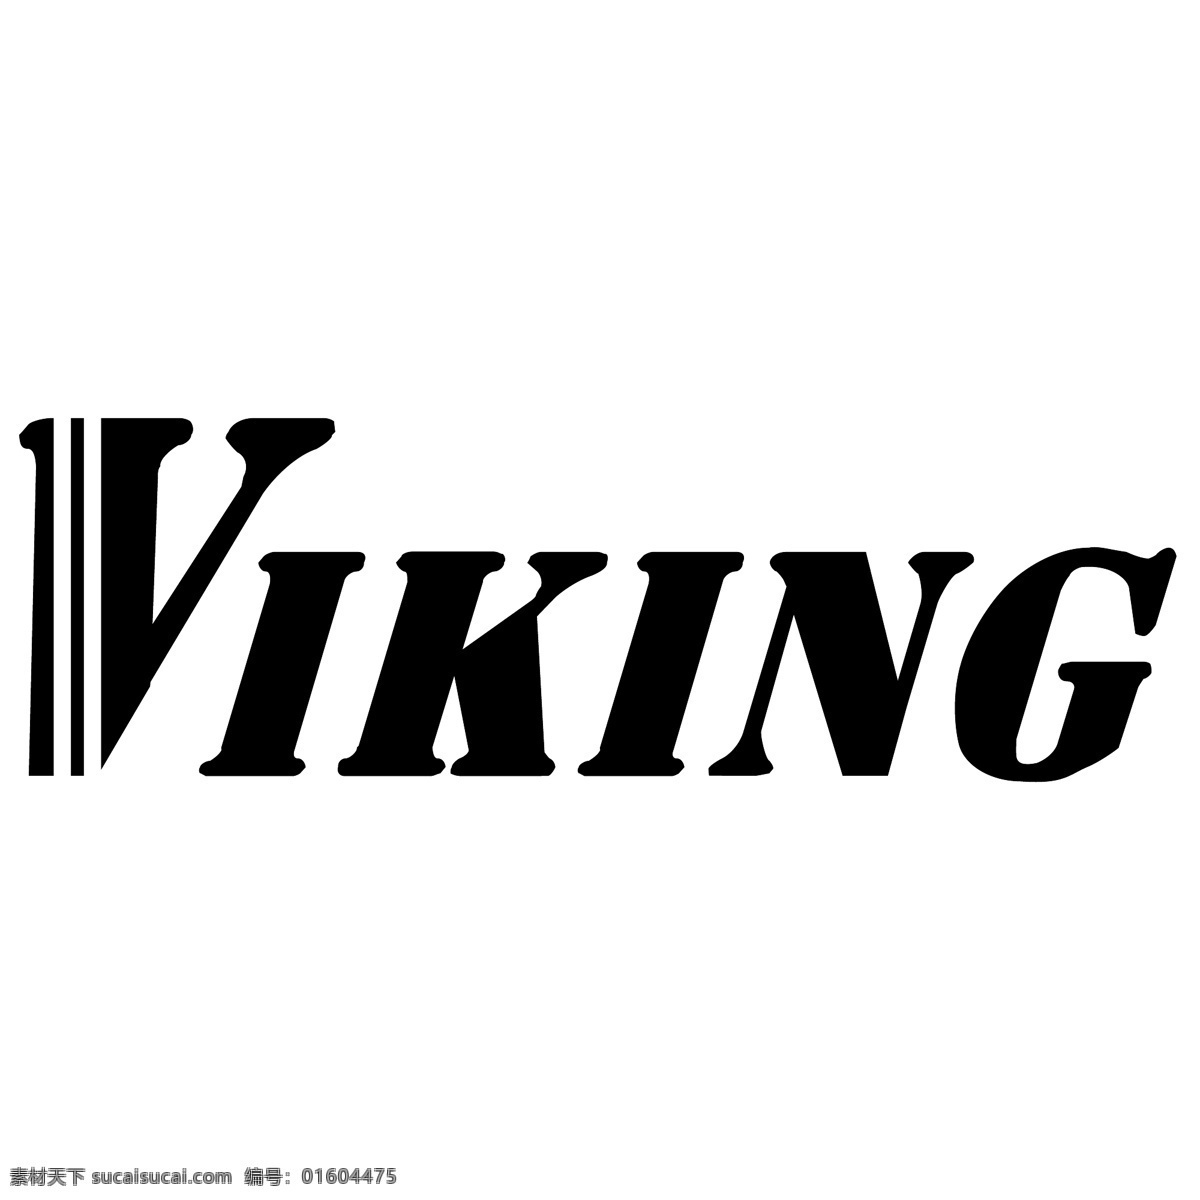 维京 人 自由 海盗 标志 标识 psd源文件 logo设计